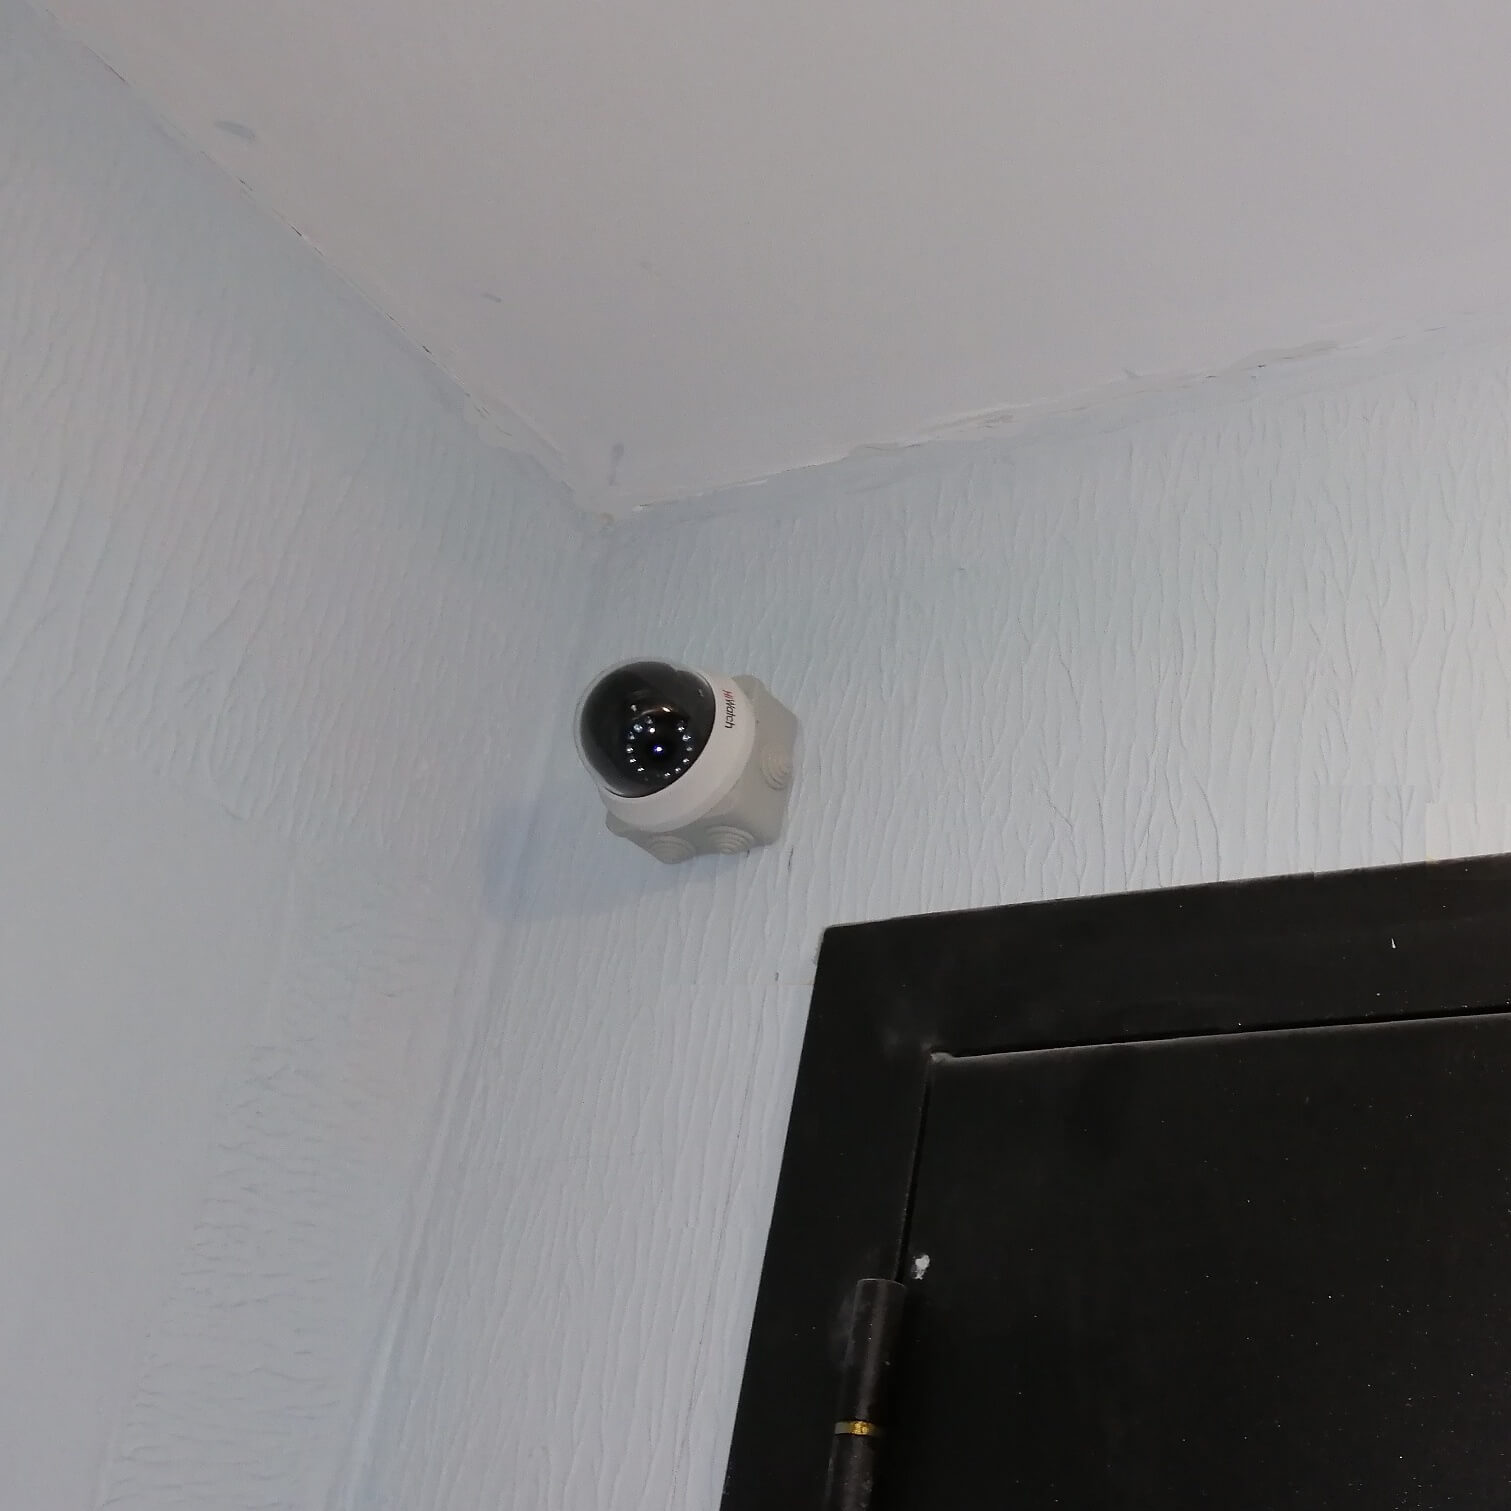 Пример установки видеонаблюдения в офис над дверью